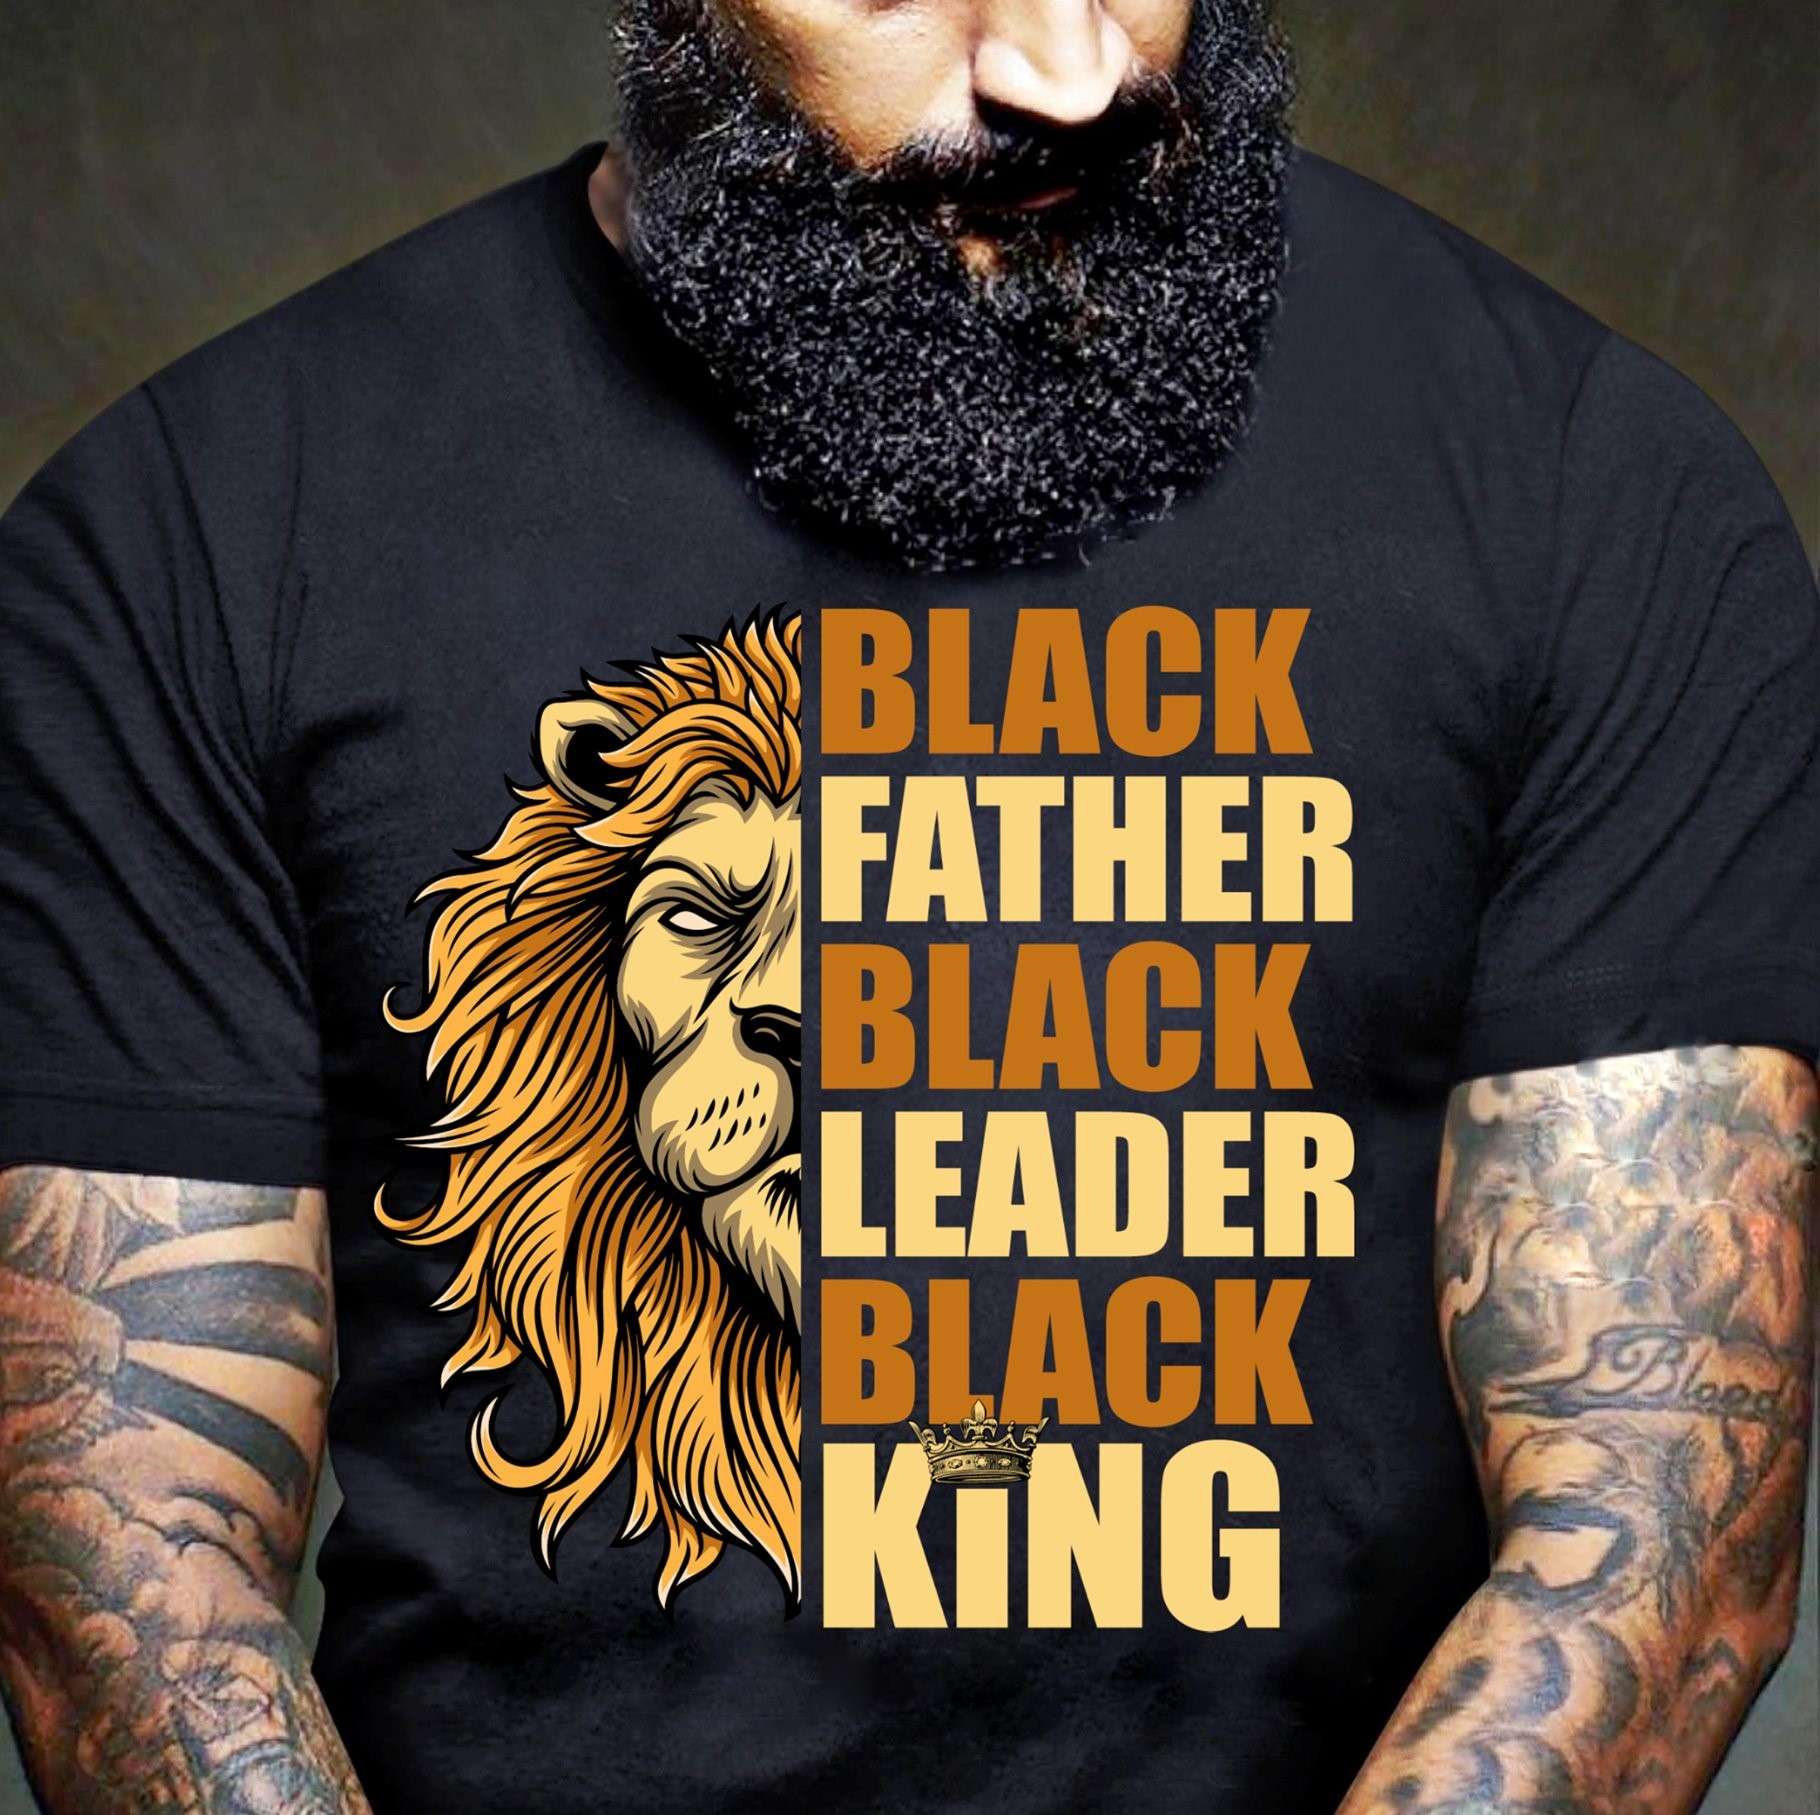 Lion King - Black father black leader black king